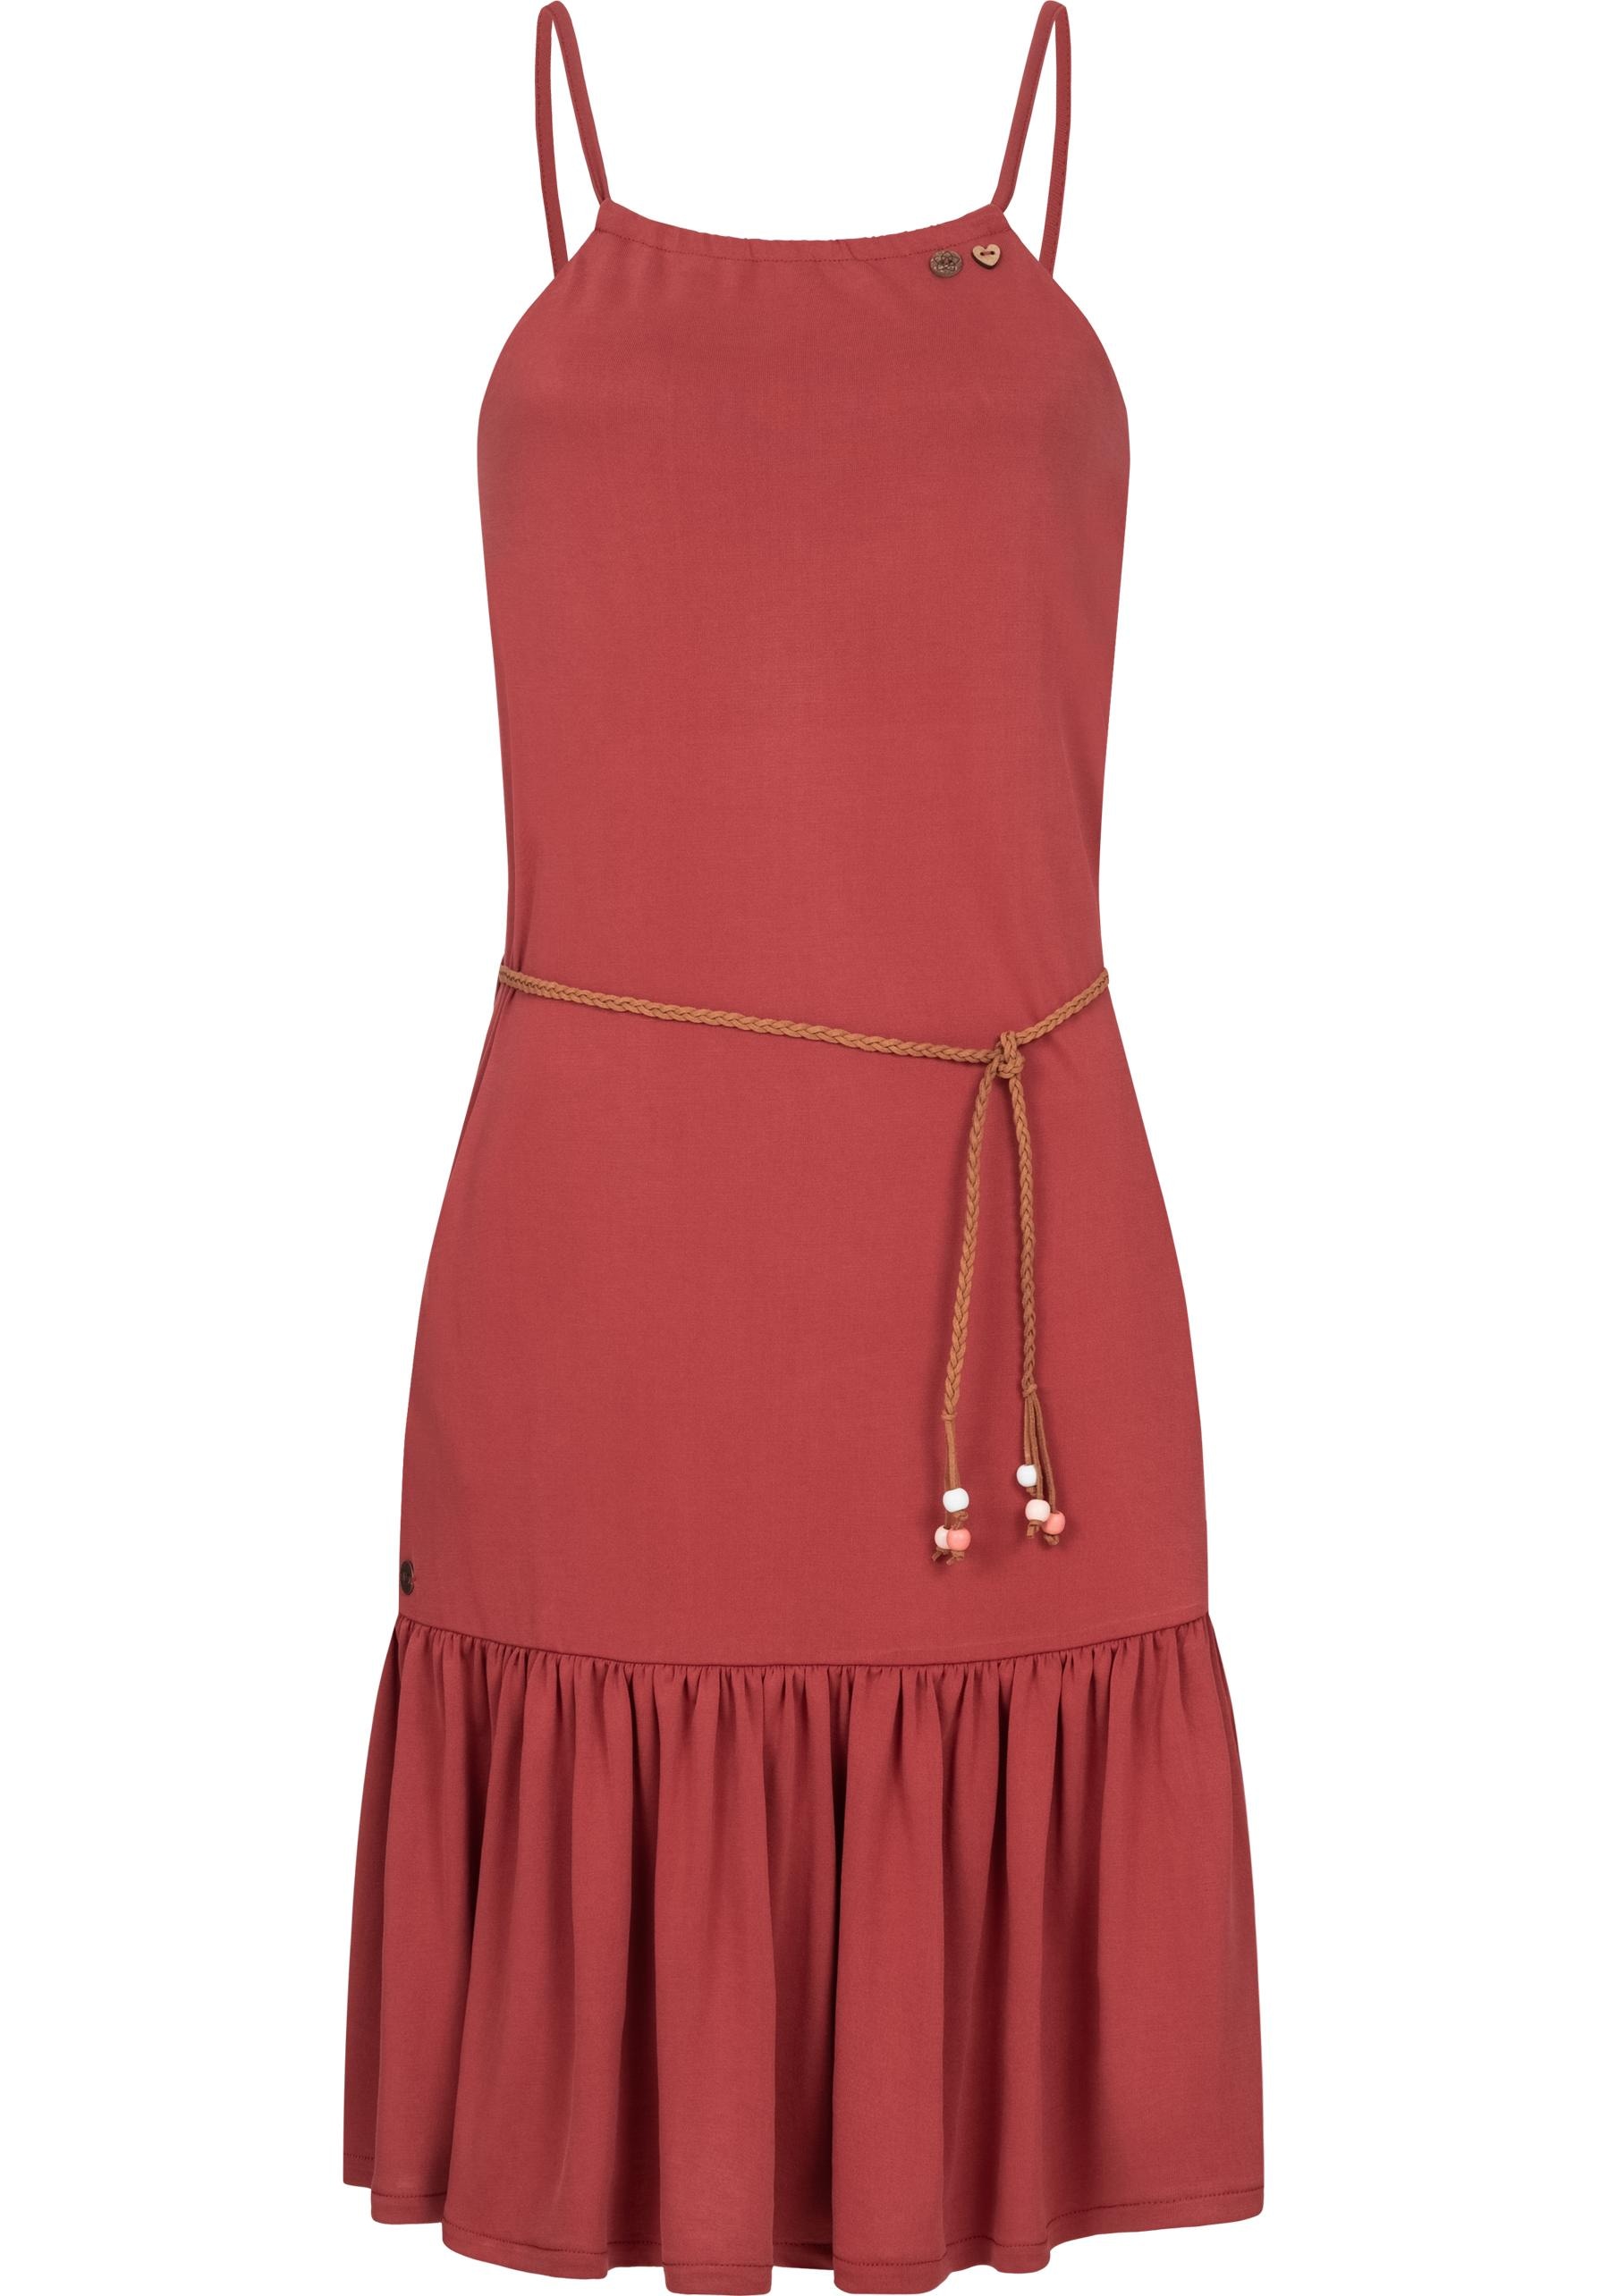 Spaghettikleid »Thime«, stylisches Sommerkleid mit Spaghettiträgern und Gürtel